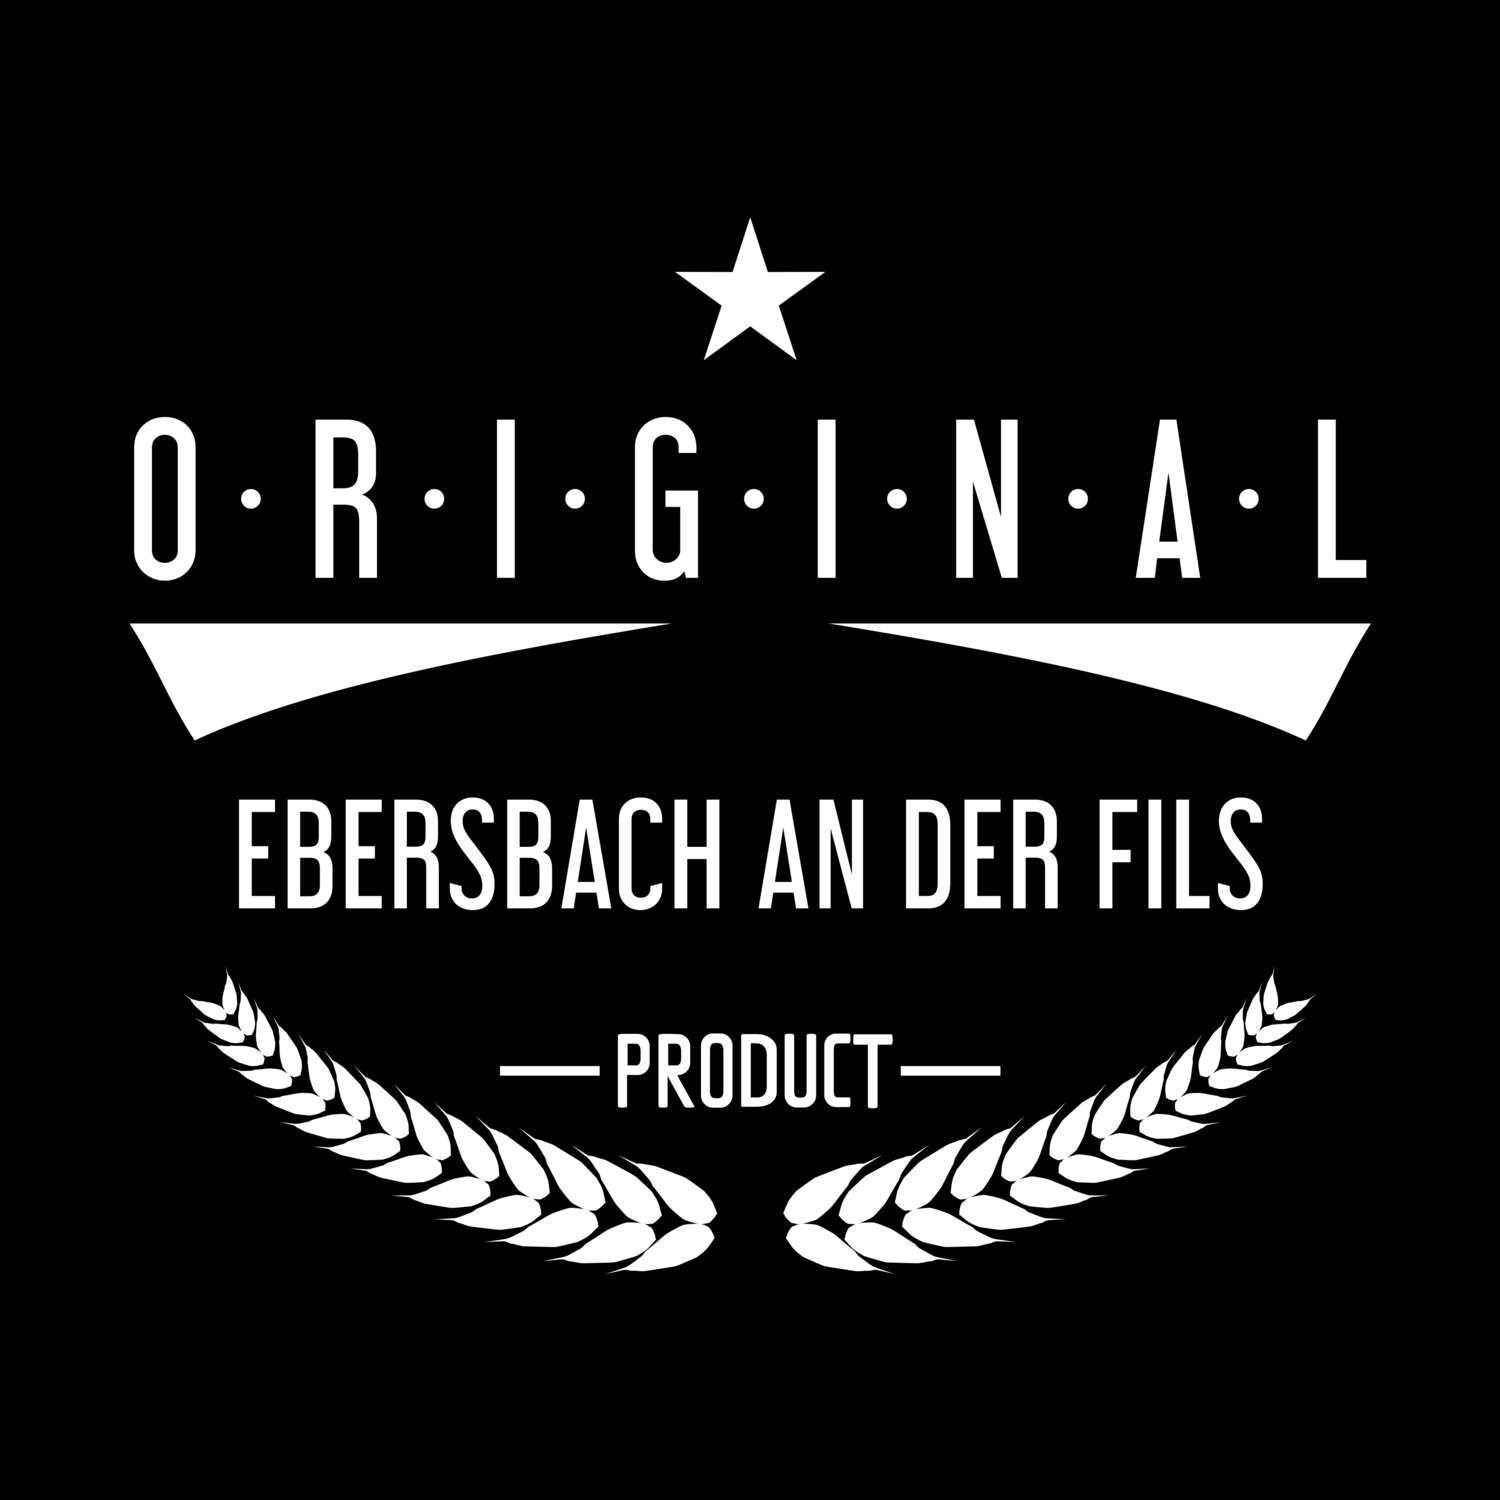 Ebersbach an der Fils T-Shirt »Original Product«